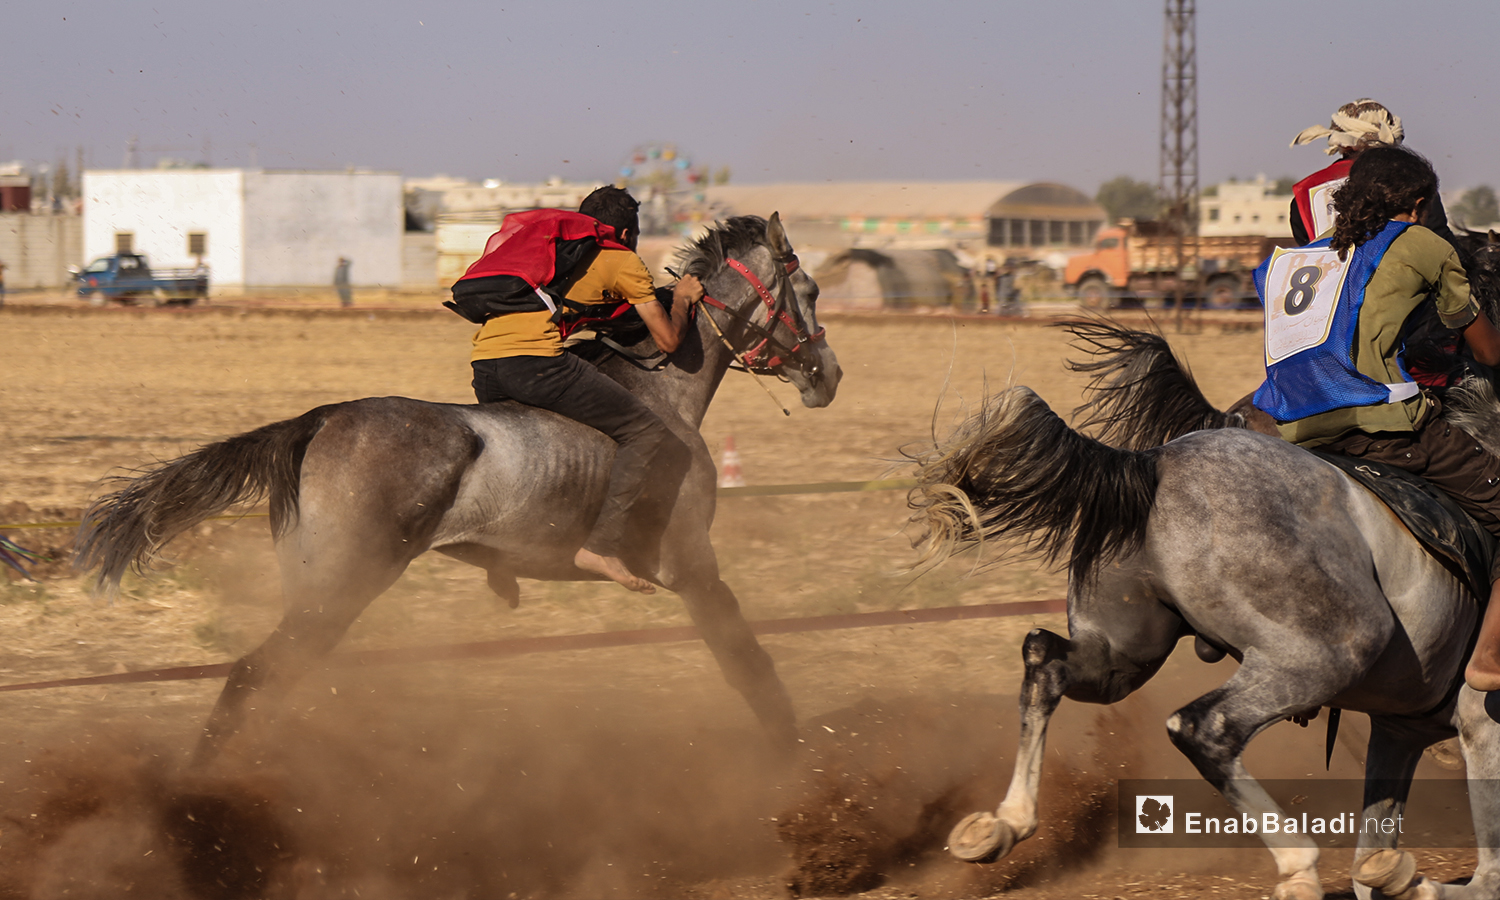 متسابقو على الخيول في مهرجان سرمد للخيول العربية الأصيلة في مدينة سرمدا بشمال إدلب - 28 آب 2020 (عنب بلدي / يوسف غريبي)